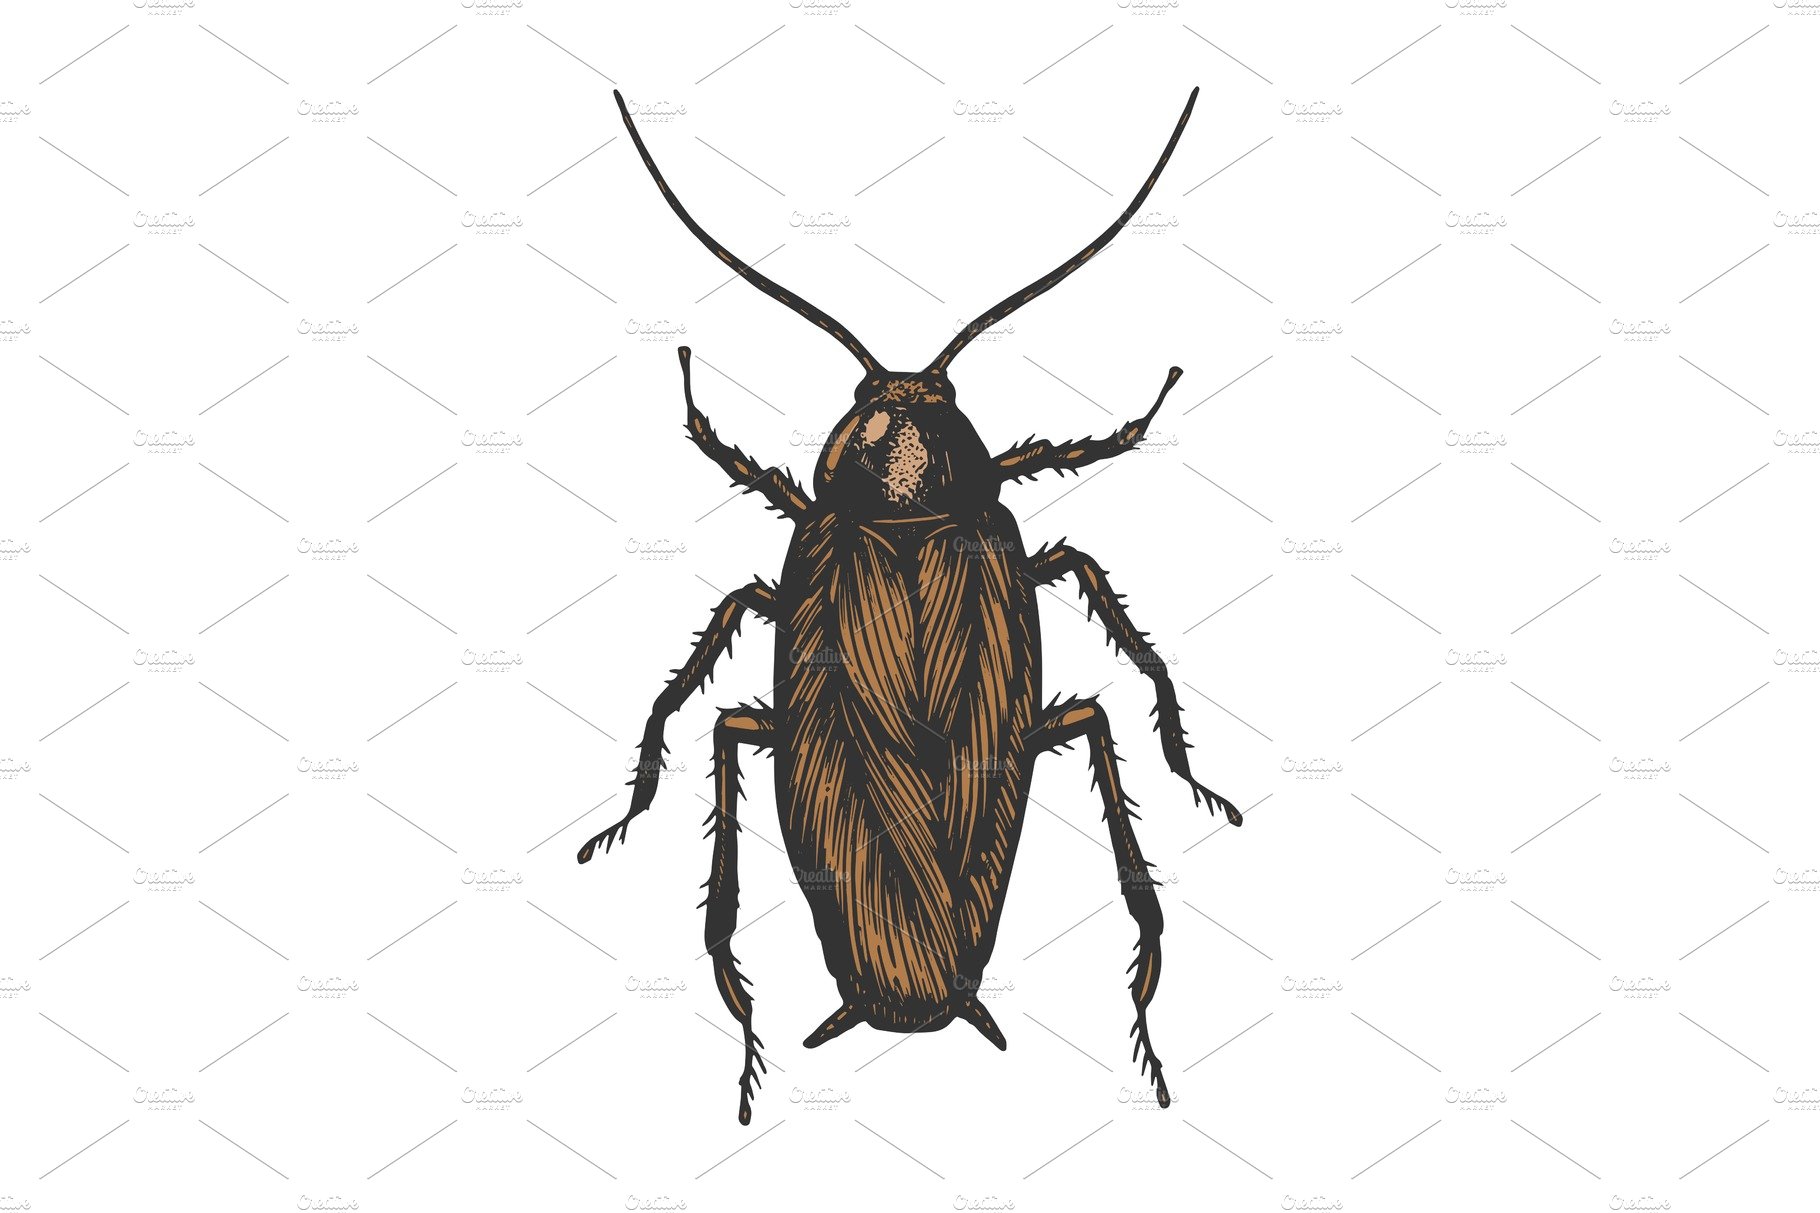 Cockroach bug color sketch vector cover image.